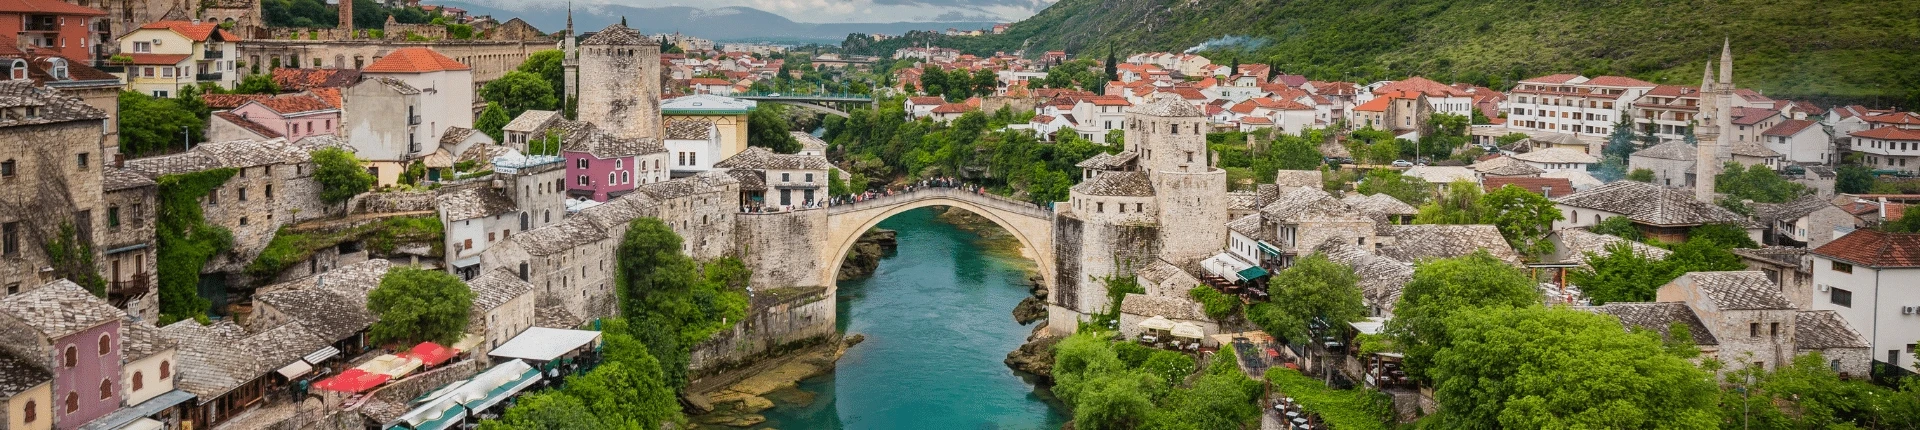 Mostar’da Gezilecek Yerler